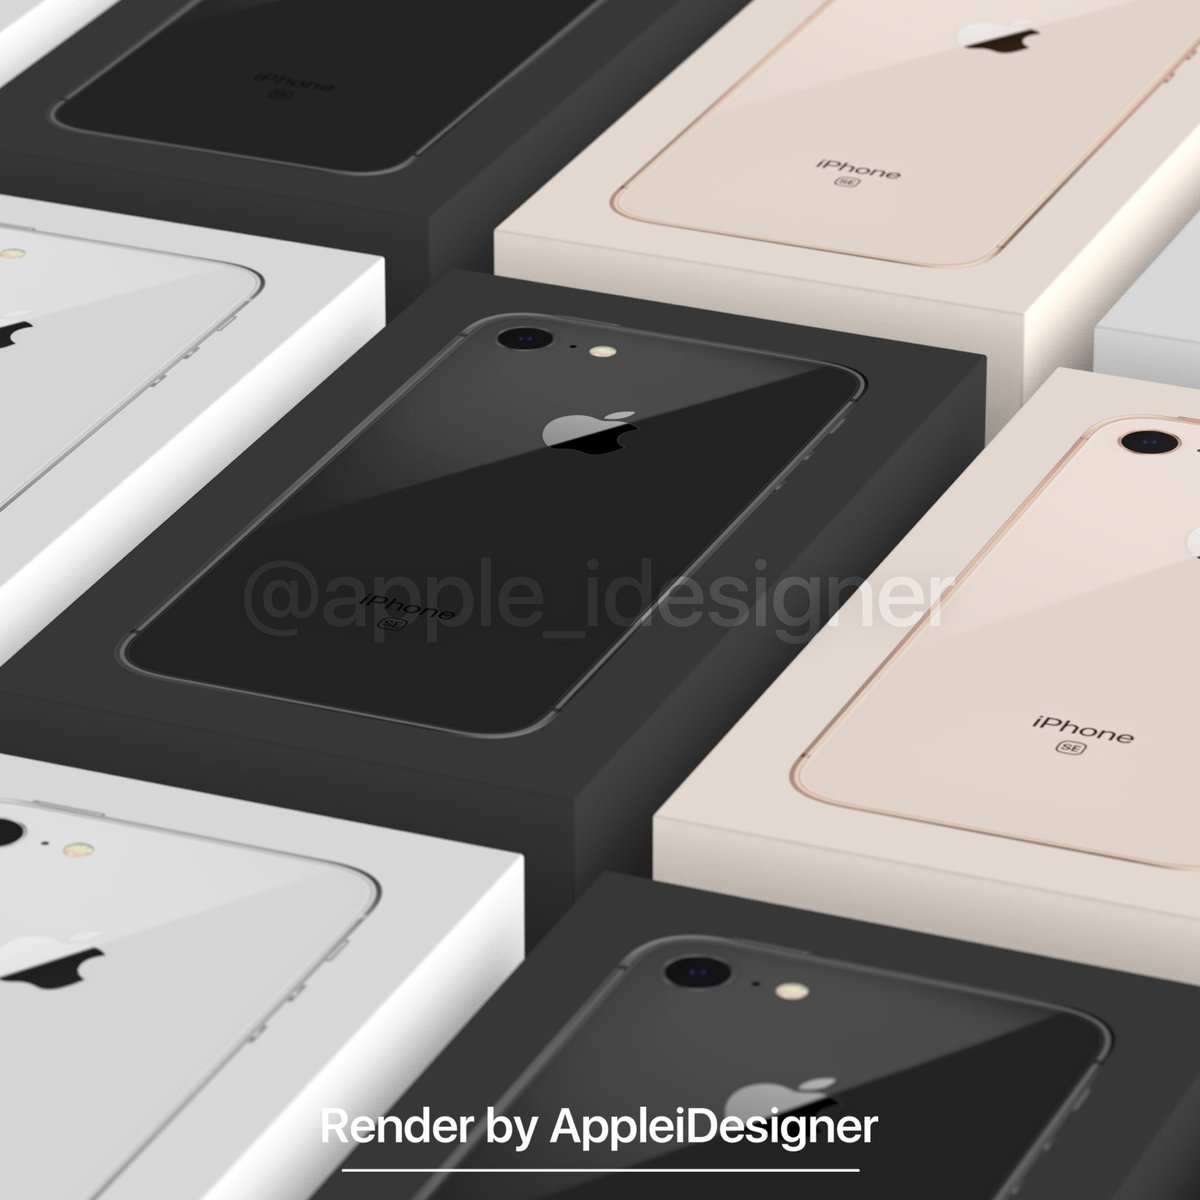 新たに、iPhone SE2 のパッケージデザインのレンダリング画像が